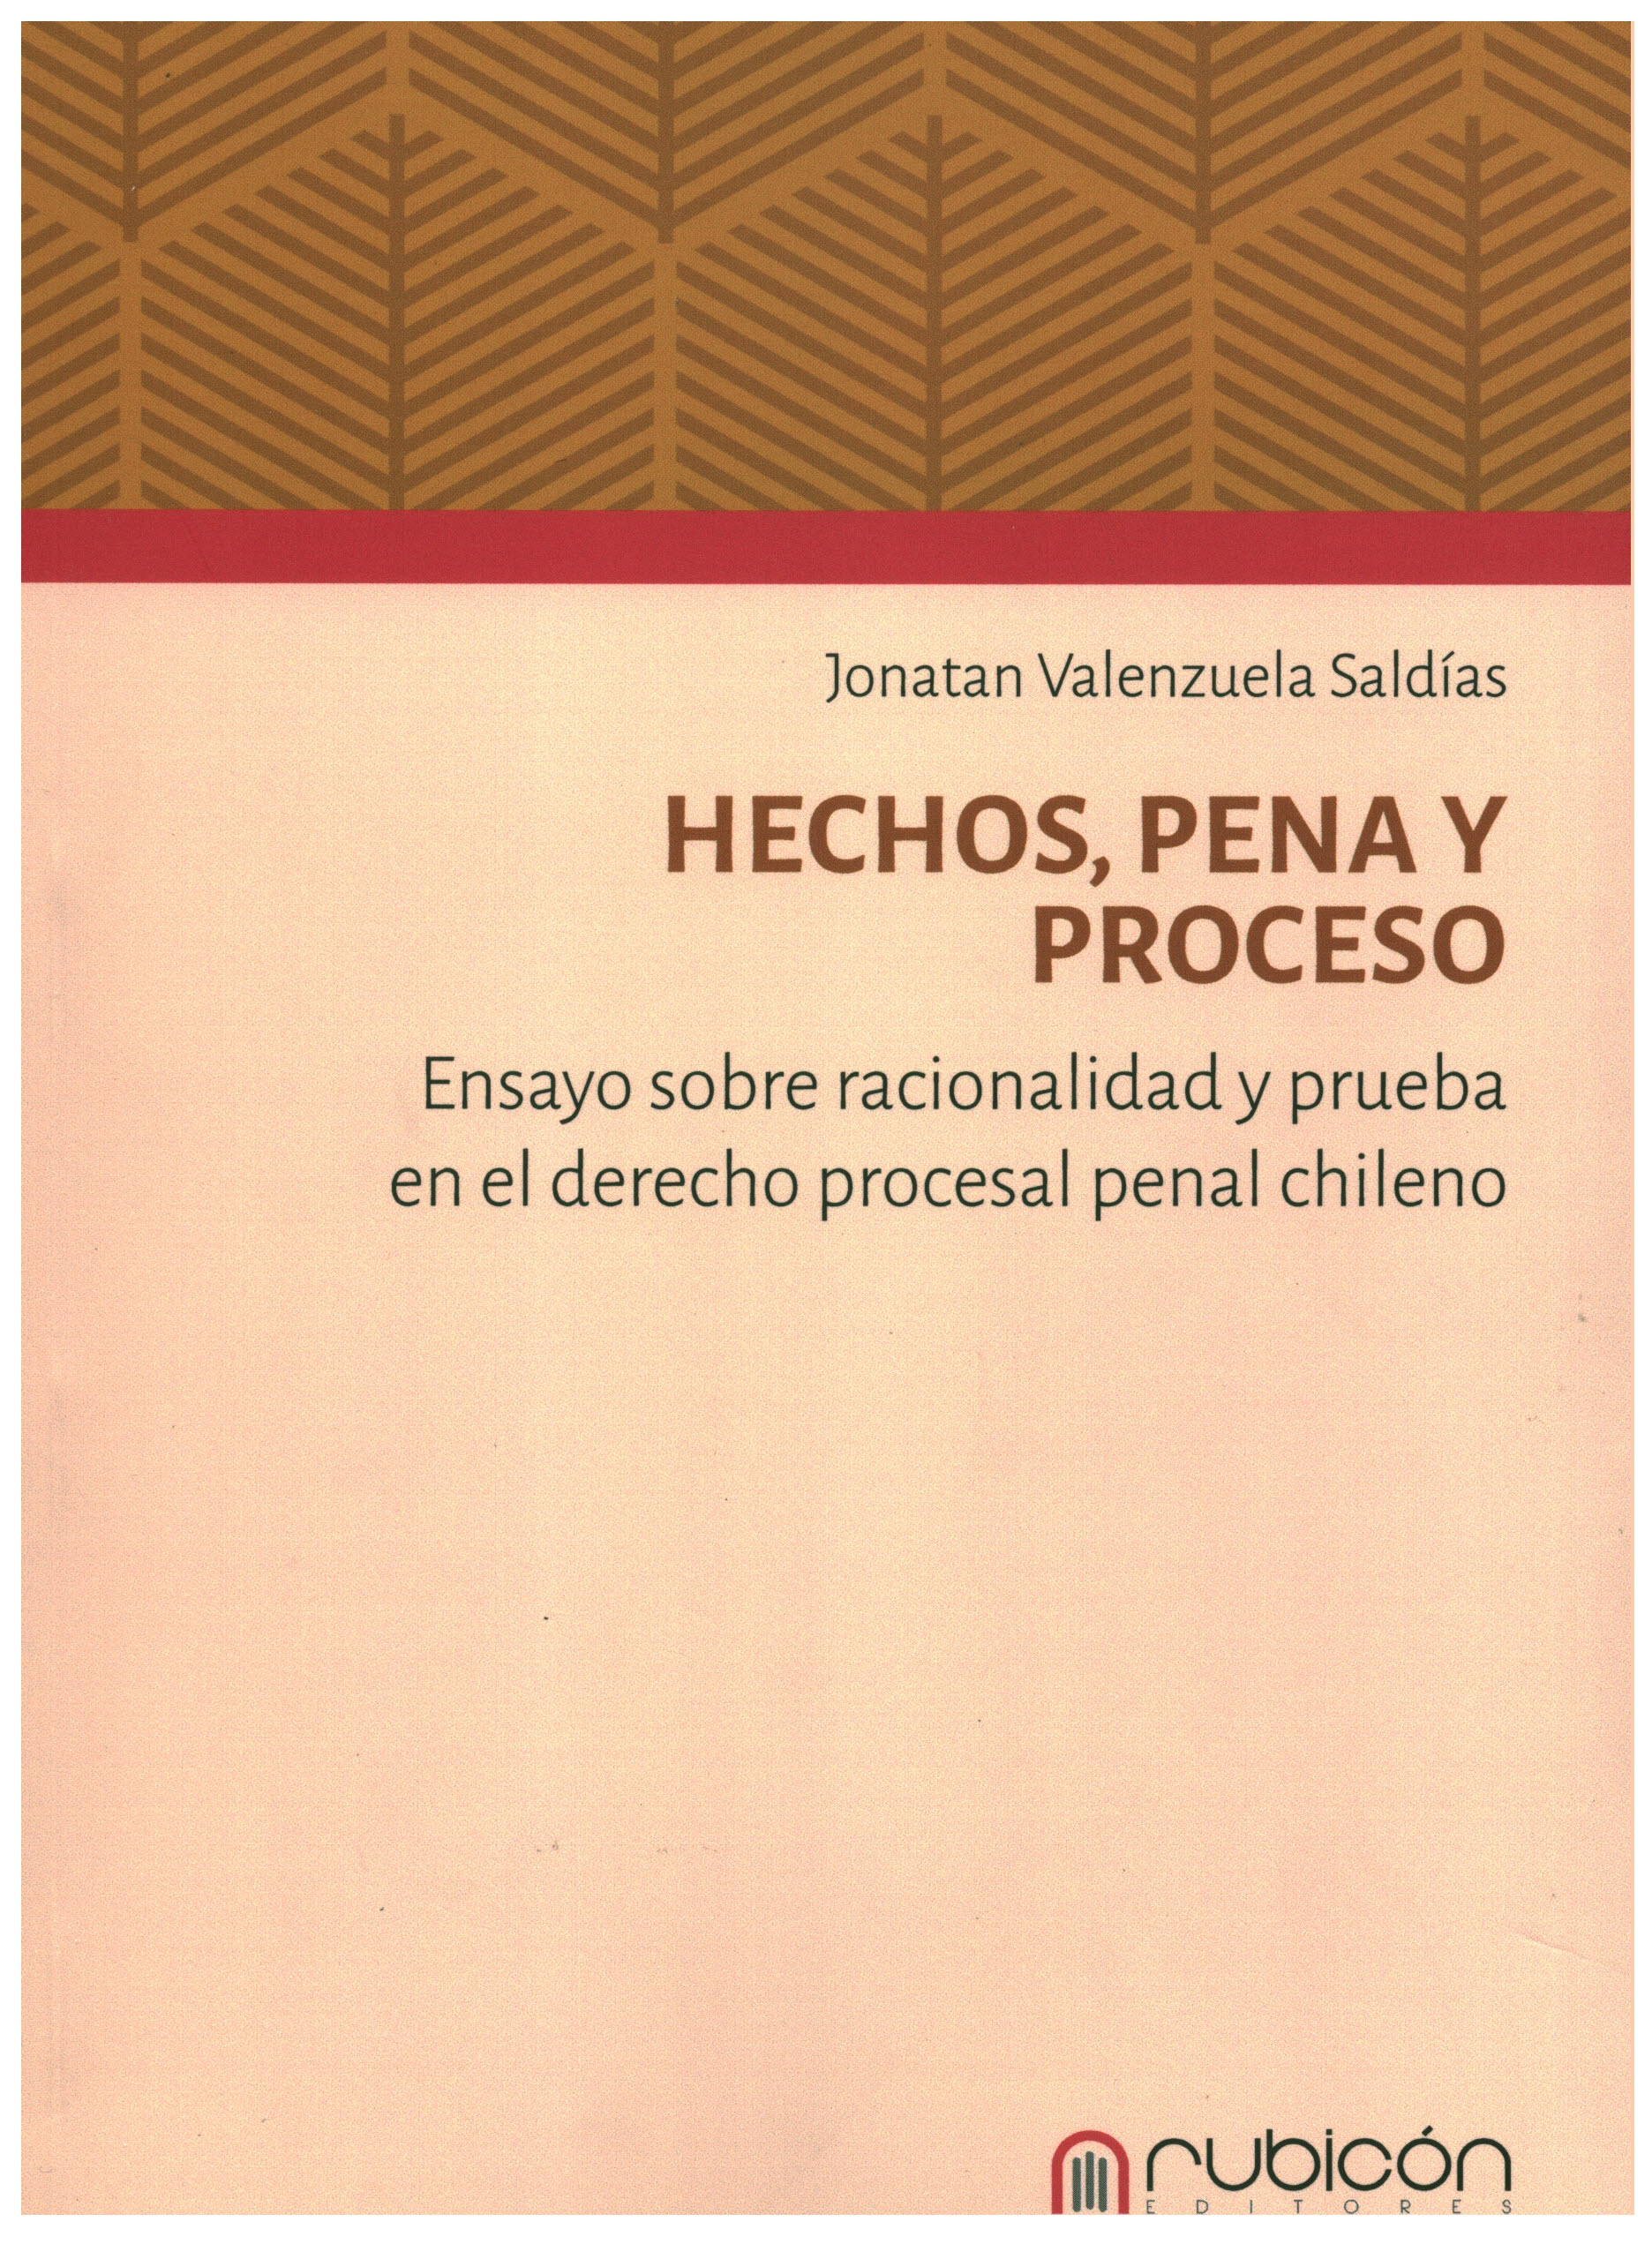 Hechos, pena y proceso. ensayos sobre racionalidad y prueba en el derecho procesal penal chileno